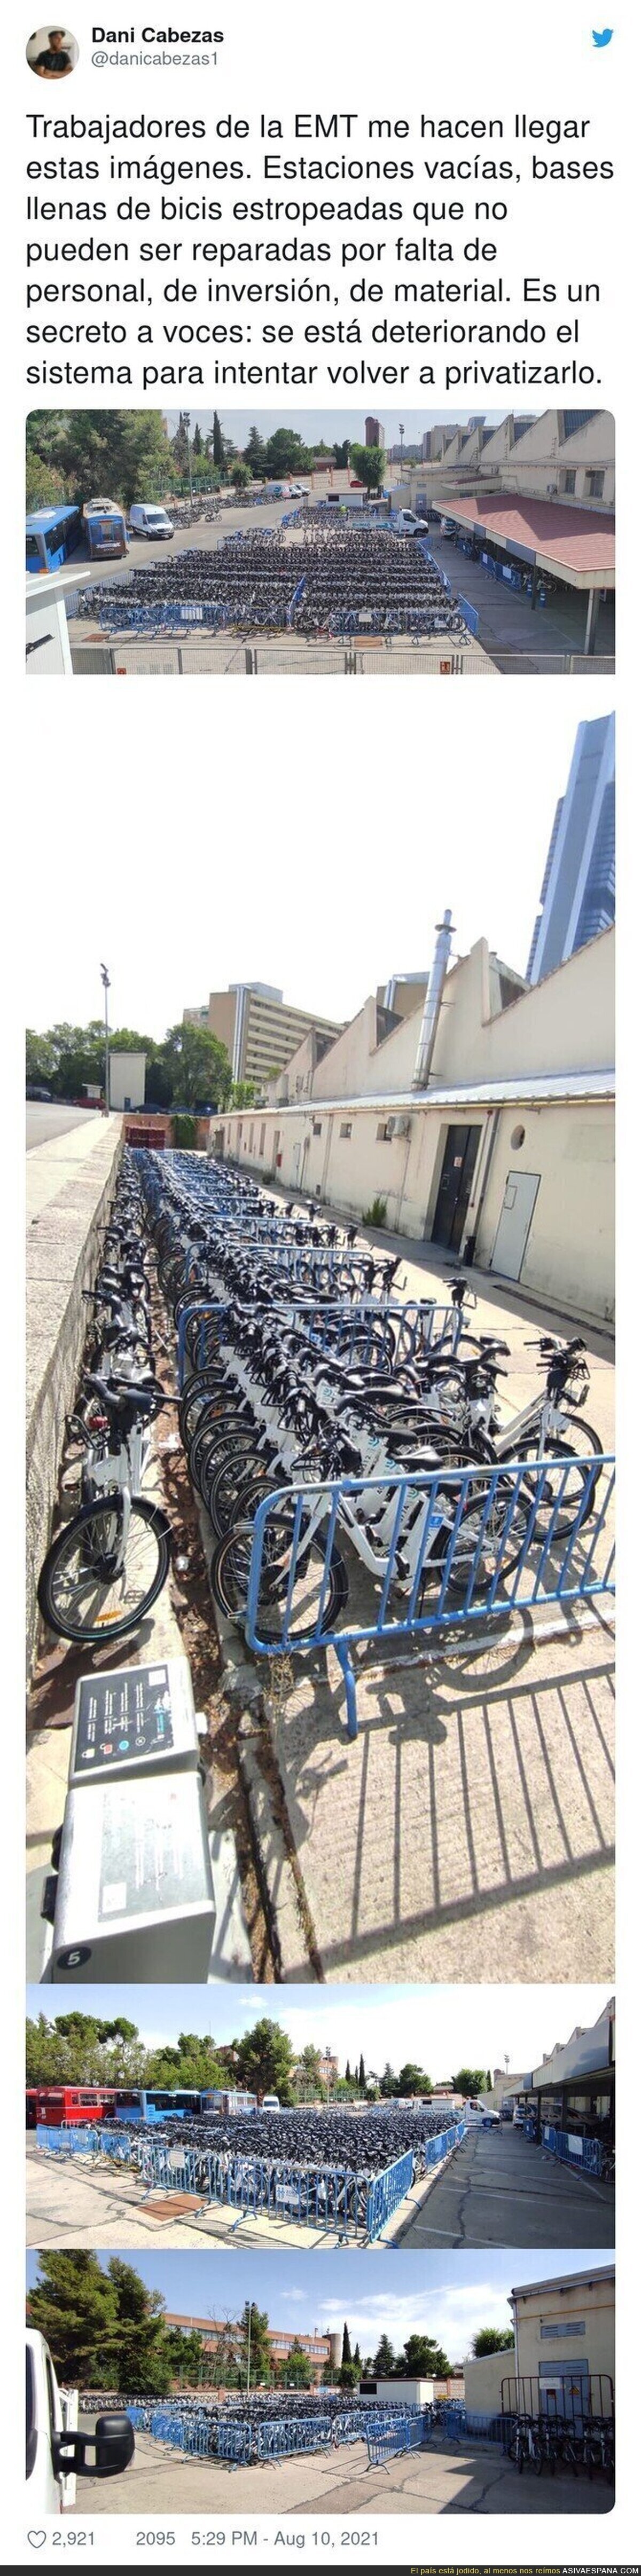 Las imágenes de las bicicletas de Madrid agolpadas en un almacén en la calle